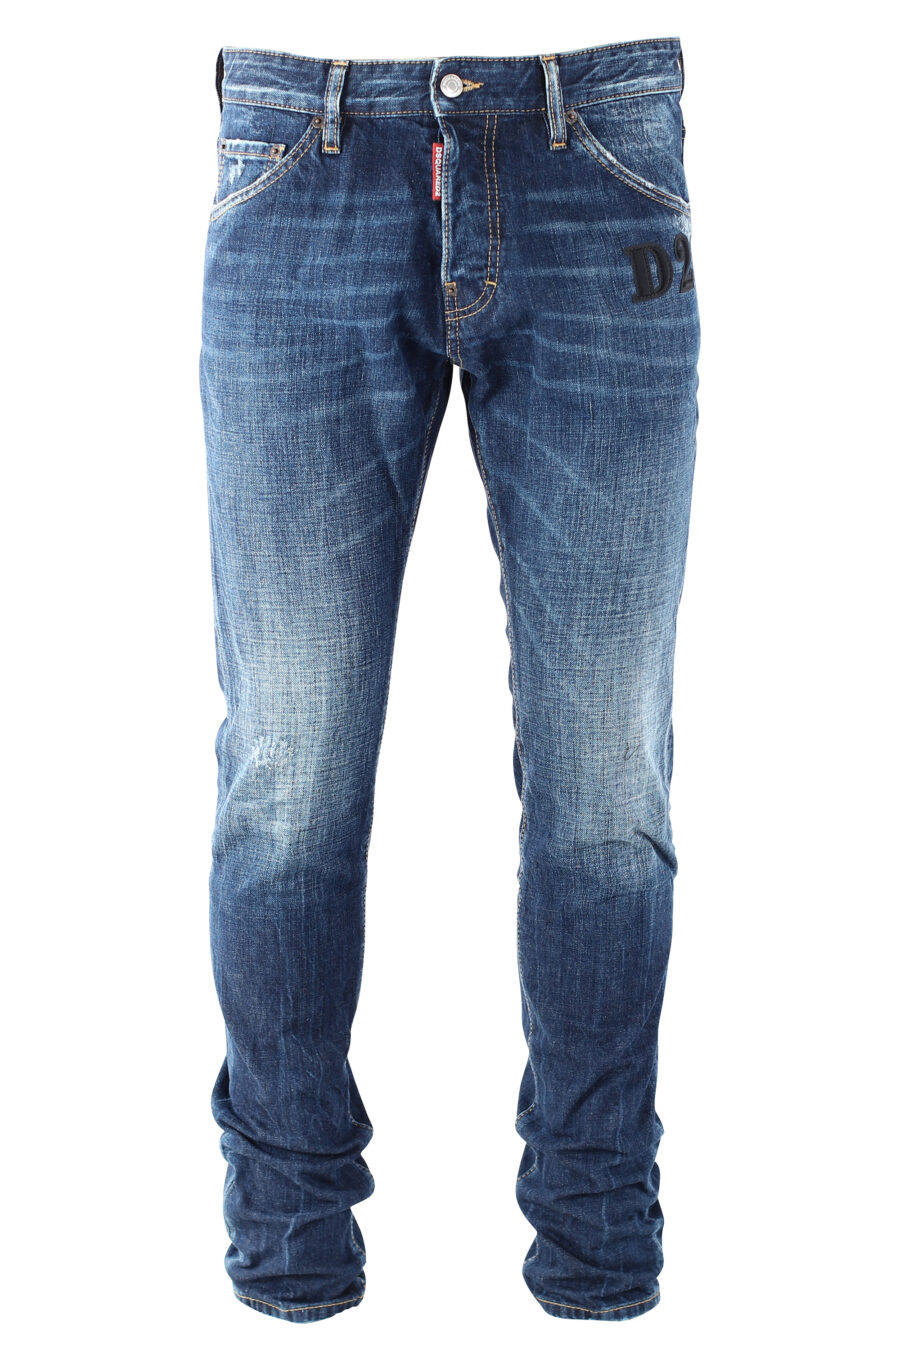 Pantalón vaquero "cool guy jean" azul con logo "D2" negro - IMG 9686